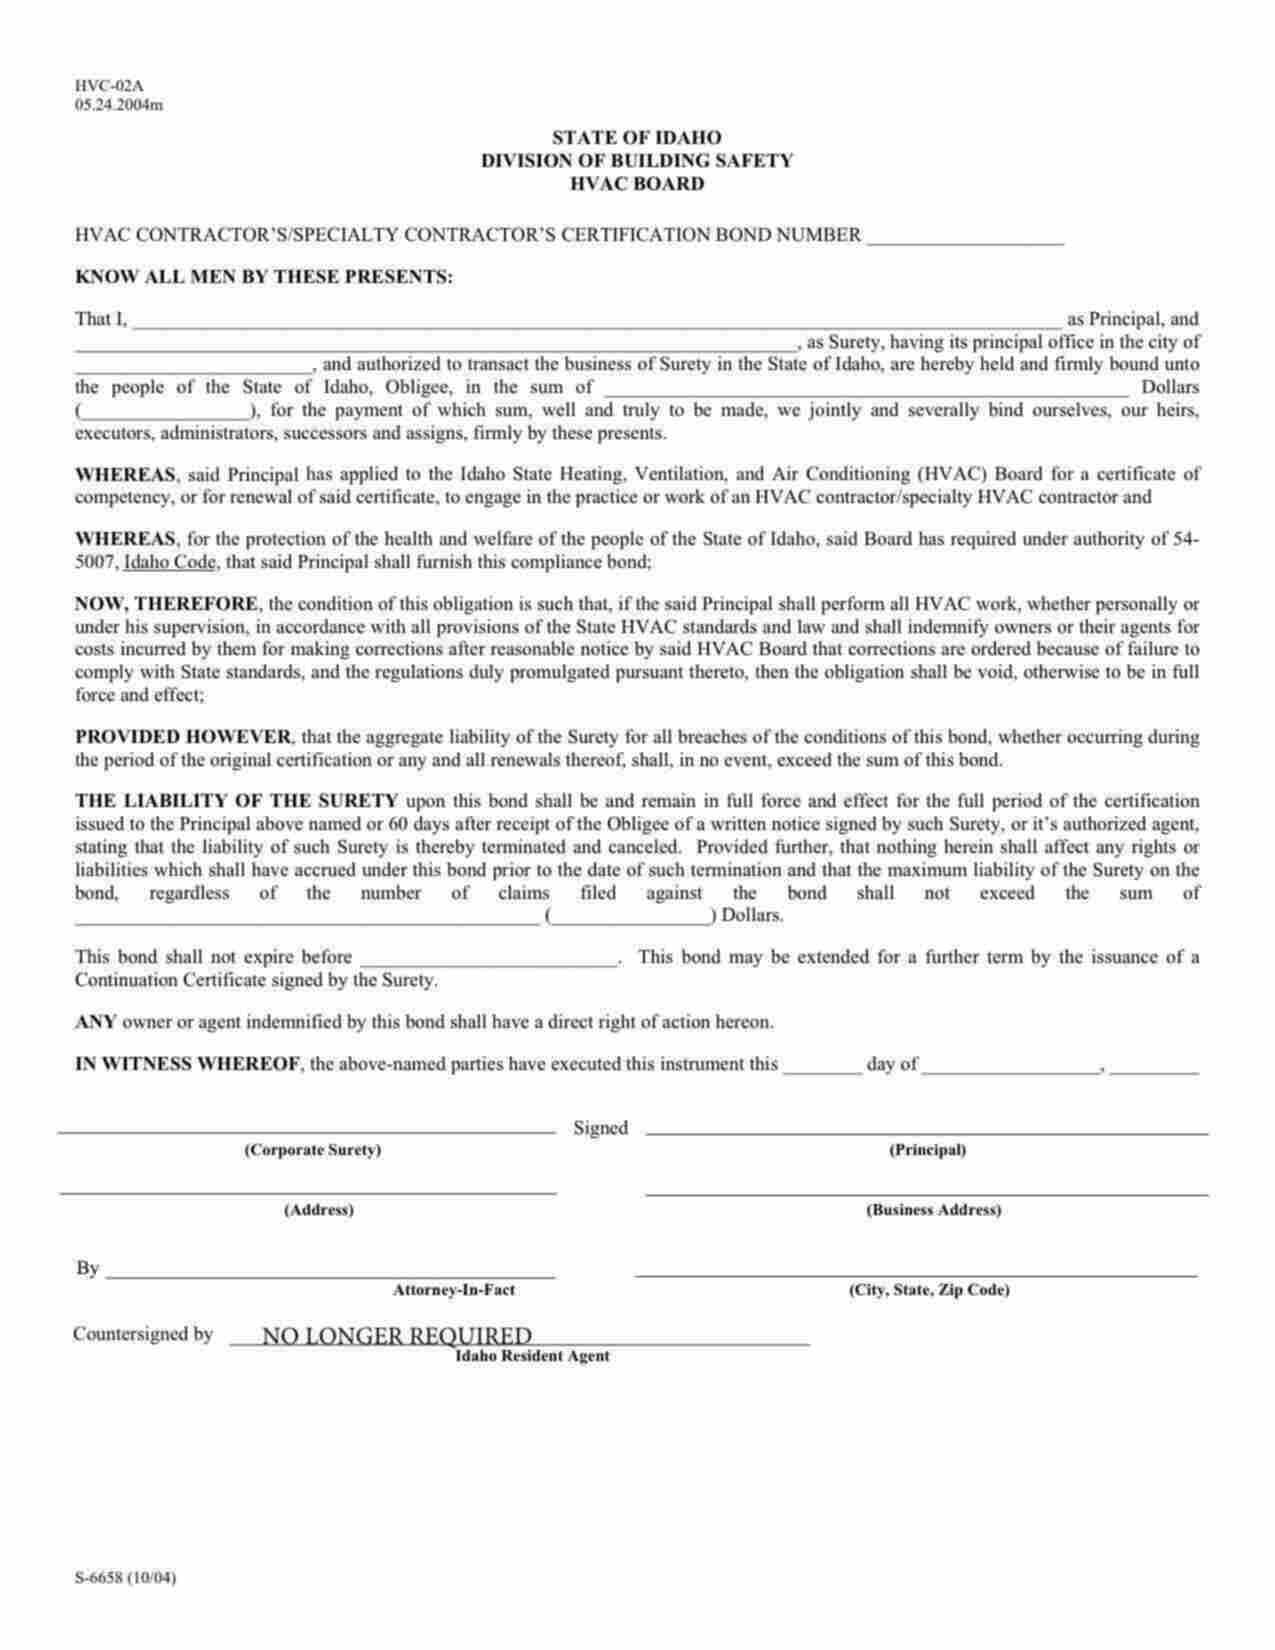 Idaho HVAC Contractor / Specialty Contractor Certification Bond Form